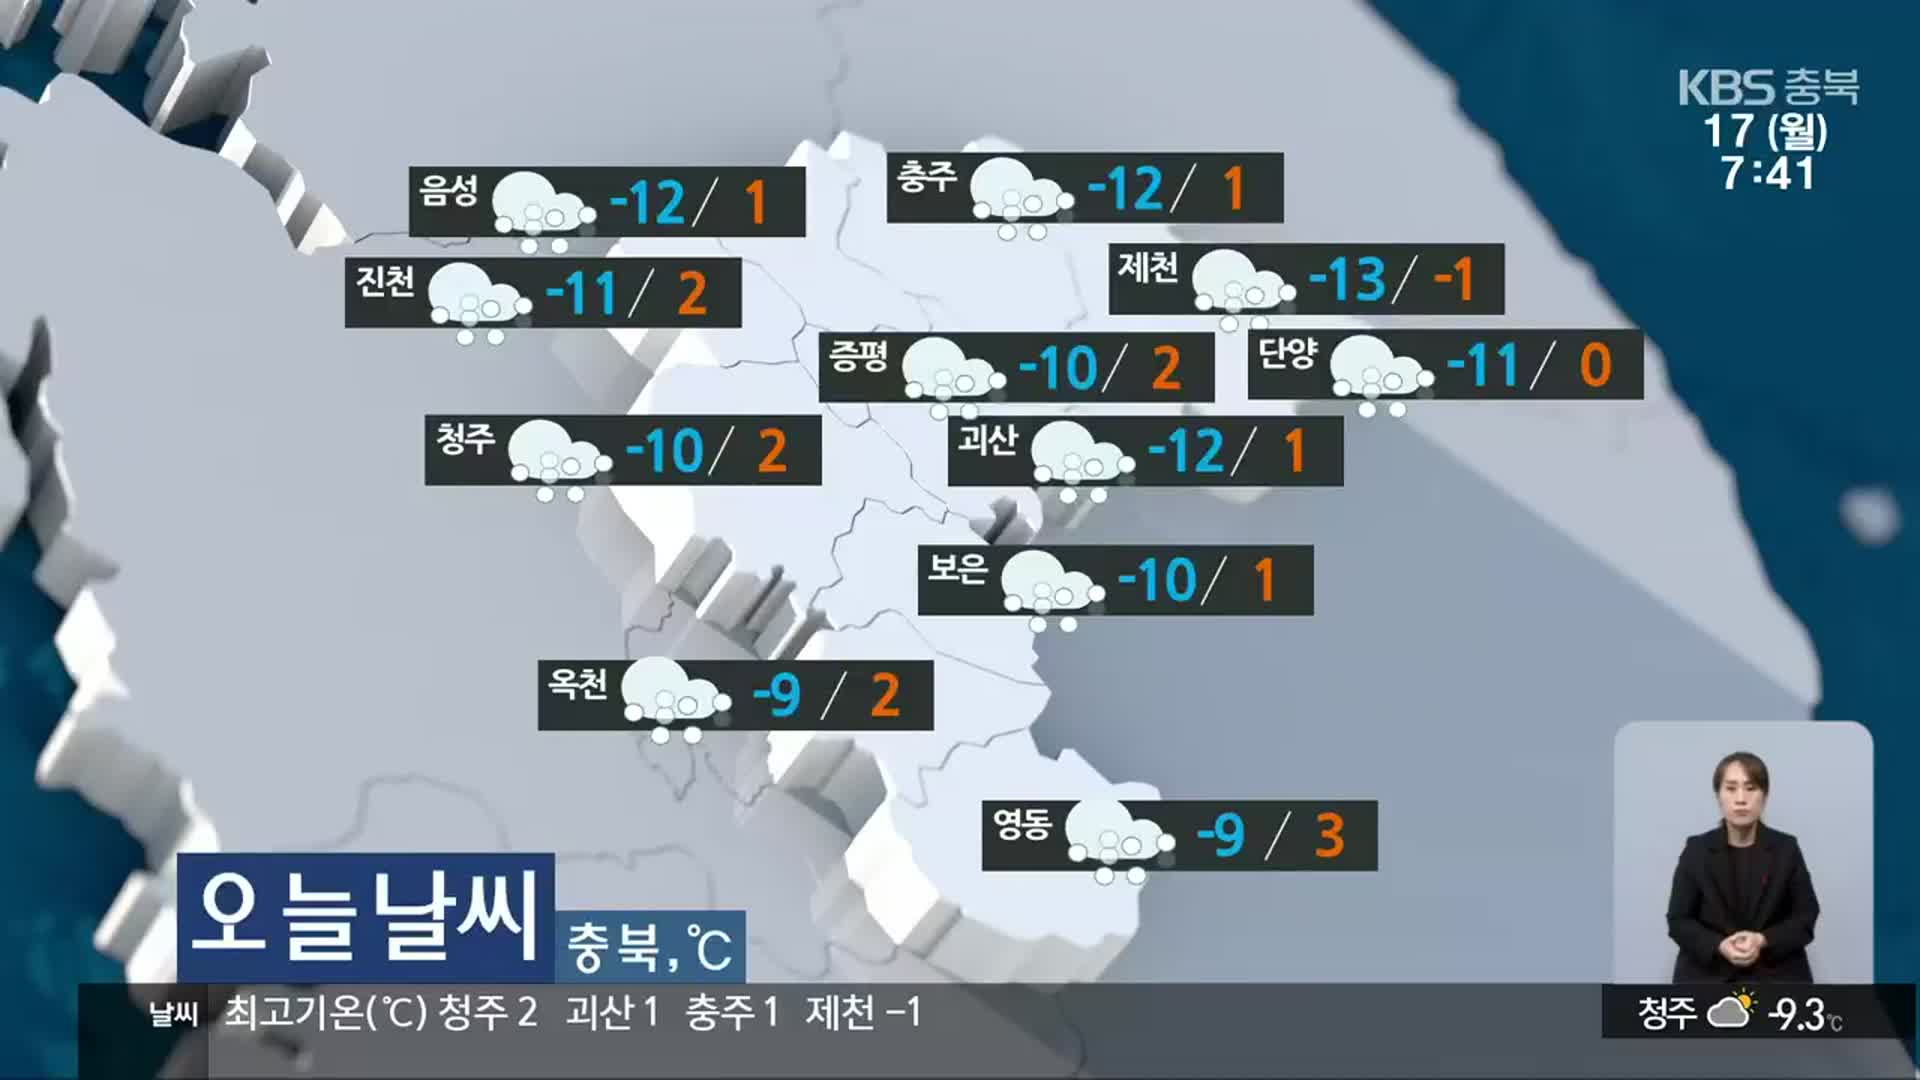 [날씨] 충북 전역 한파주의보…오후부터 1cm 안팎 ‘눈’